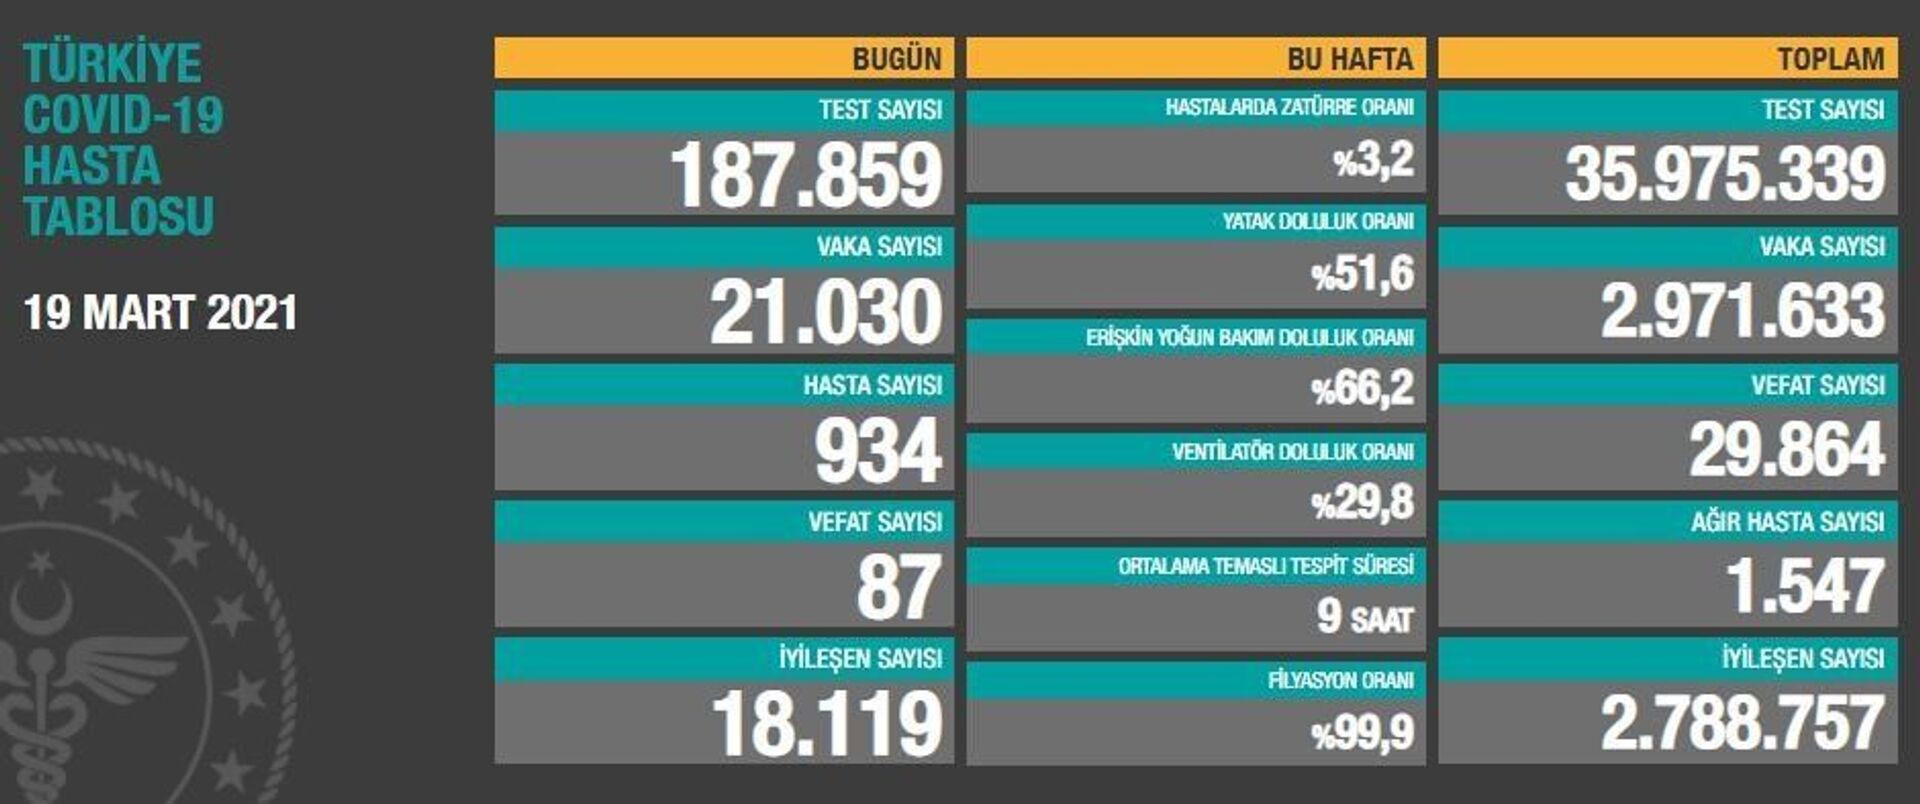 Türkiye'de son 24 saatte koronavirüsten 87 kişi hayatını kaybetti, 21 bin 30 kişinin testi pozitif çıktı - Sputnik Türkiye, 1920, 19.03.2021